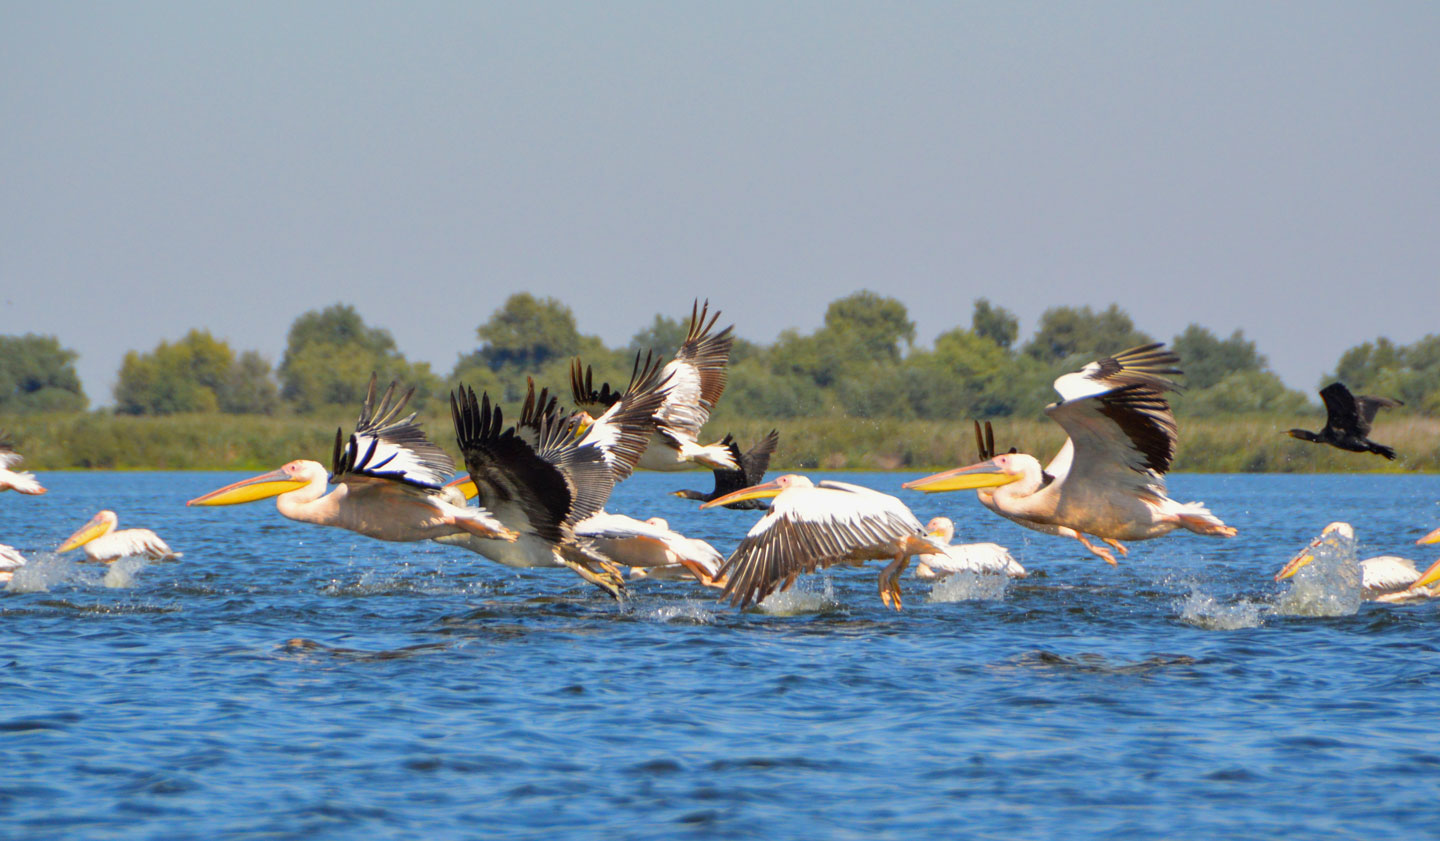 Pelicans in the Danube Delta in Romania